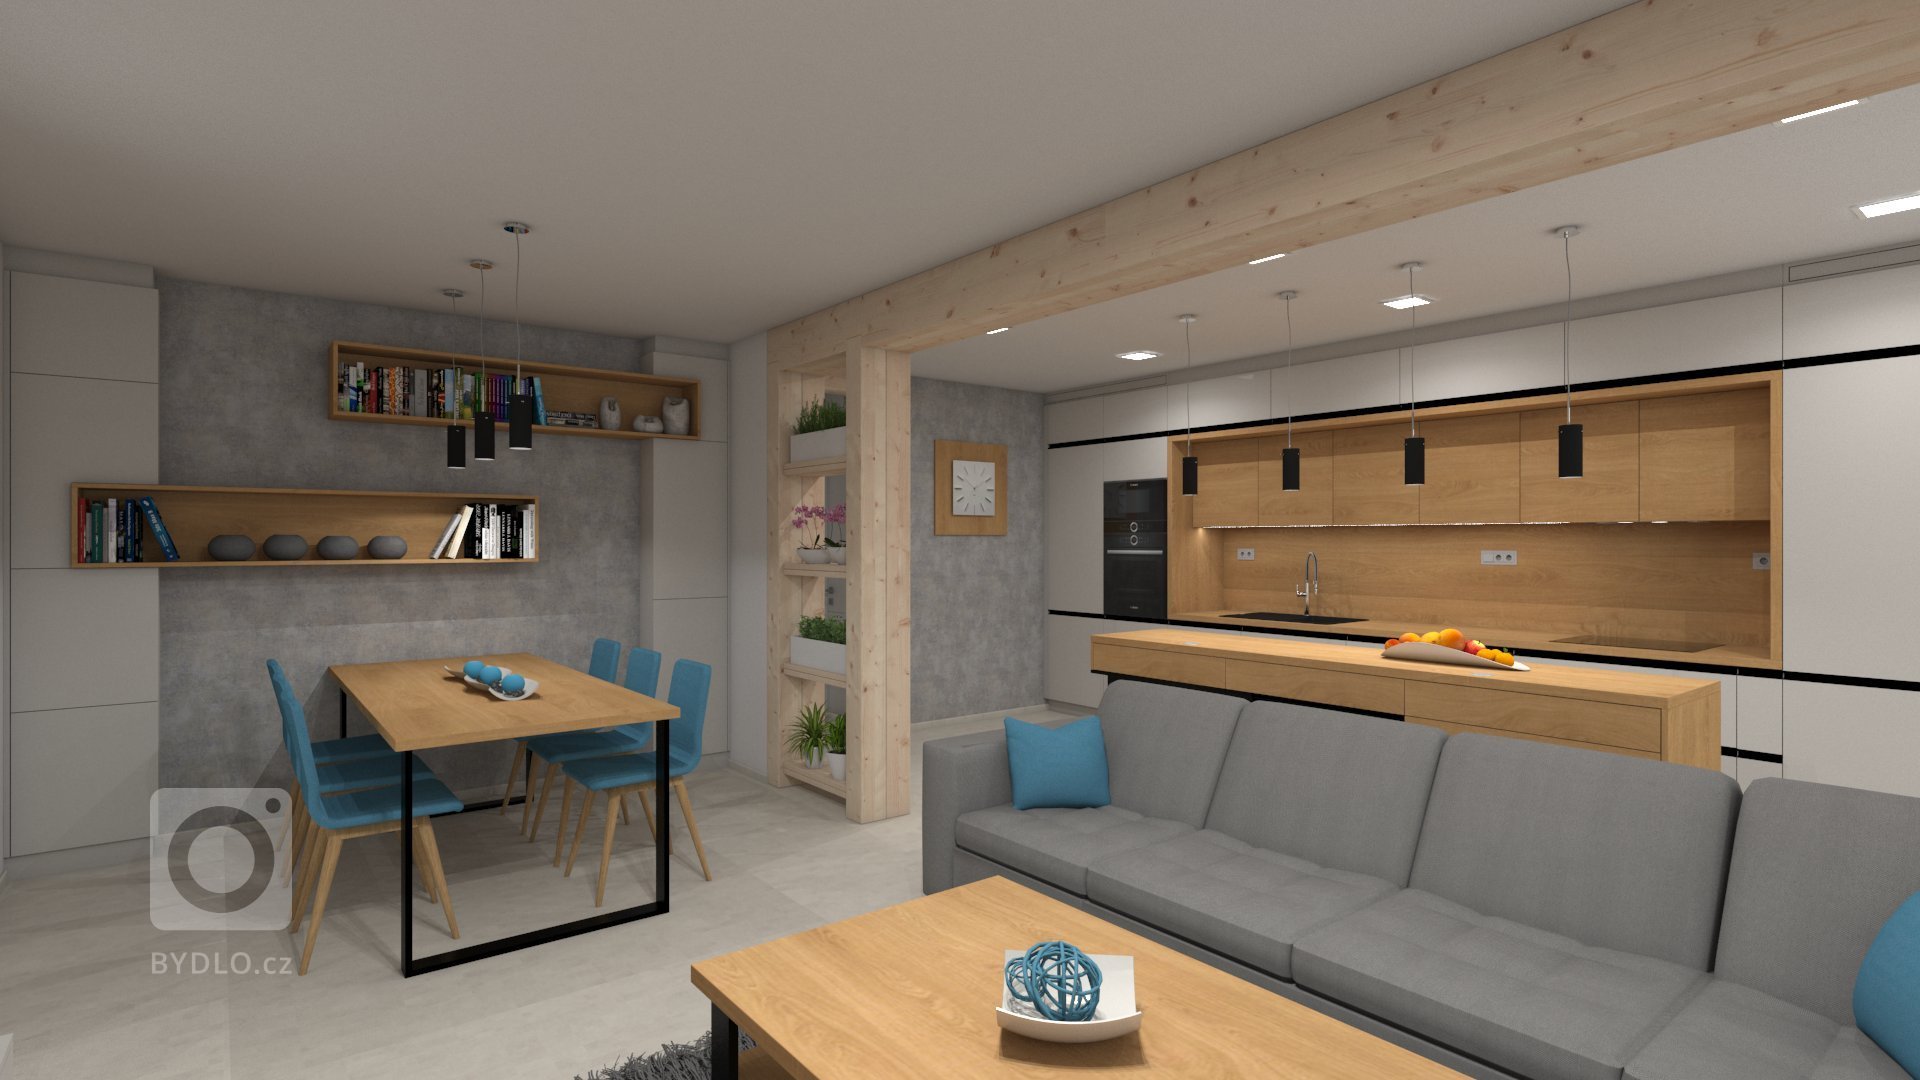 Klientovo zadání znělo, že by chtěl moderní líbivý a dobře uspořádaný interiér kuchyně s obývacím pokojem. Proto jsme zvolili světle šedou supermatnou v…